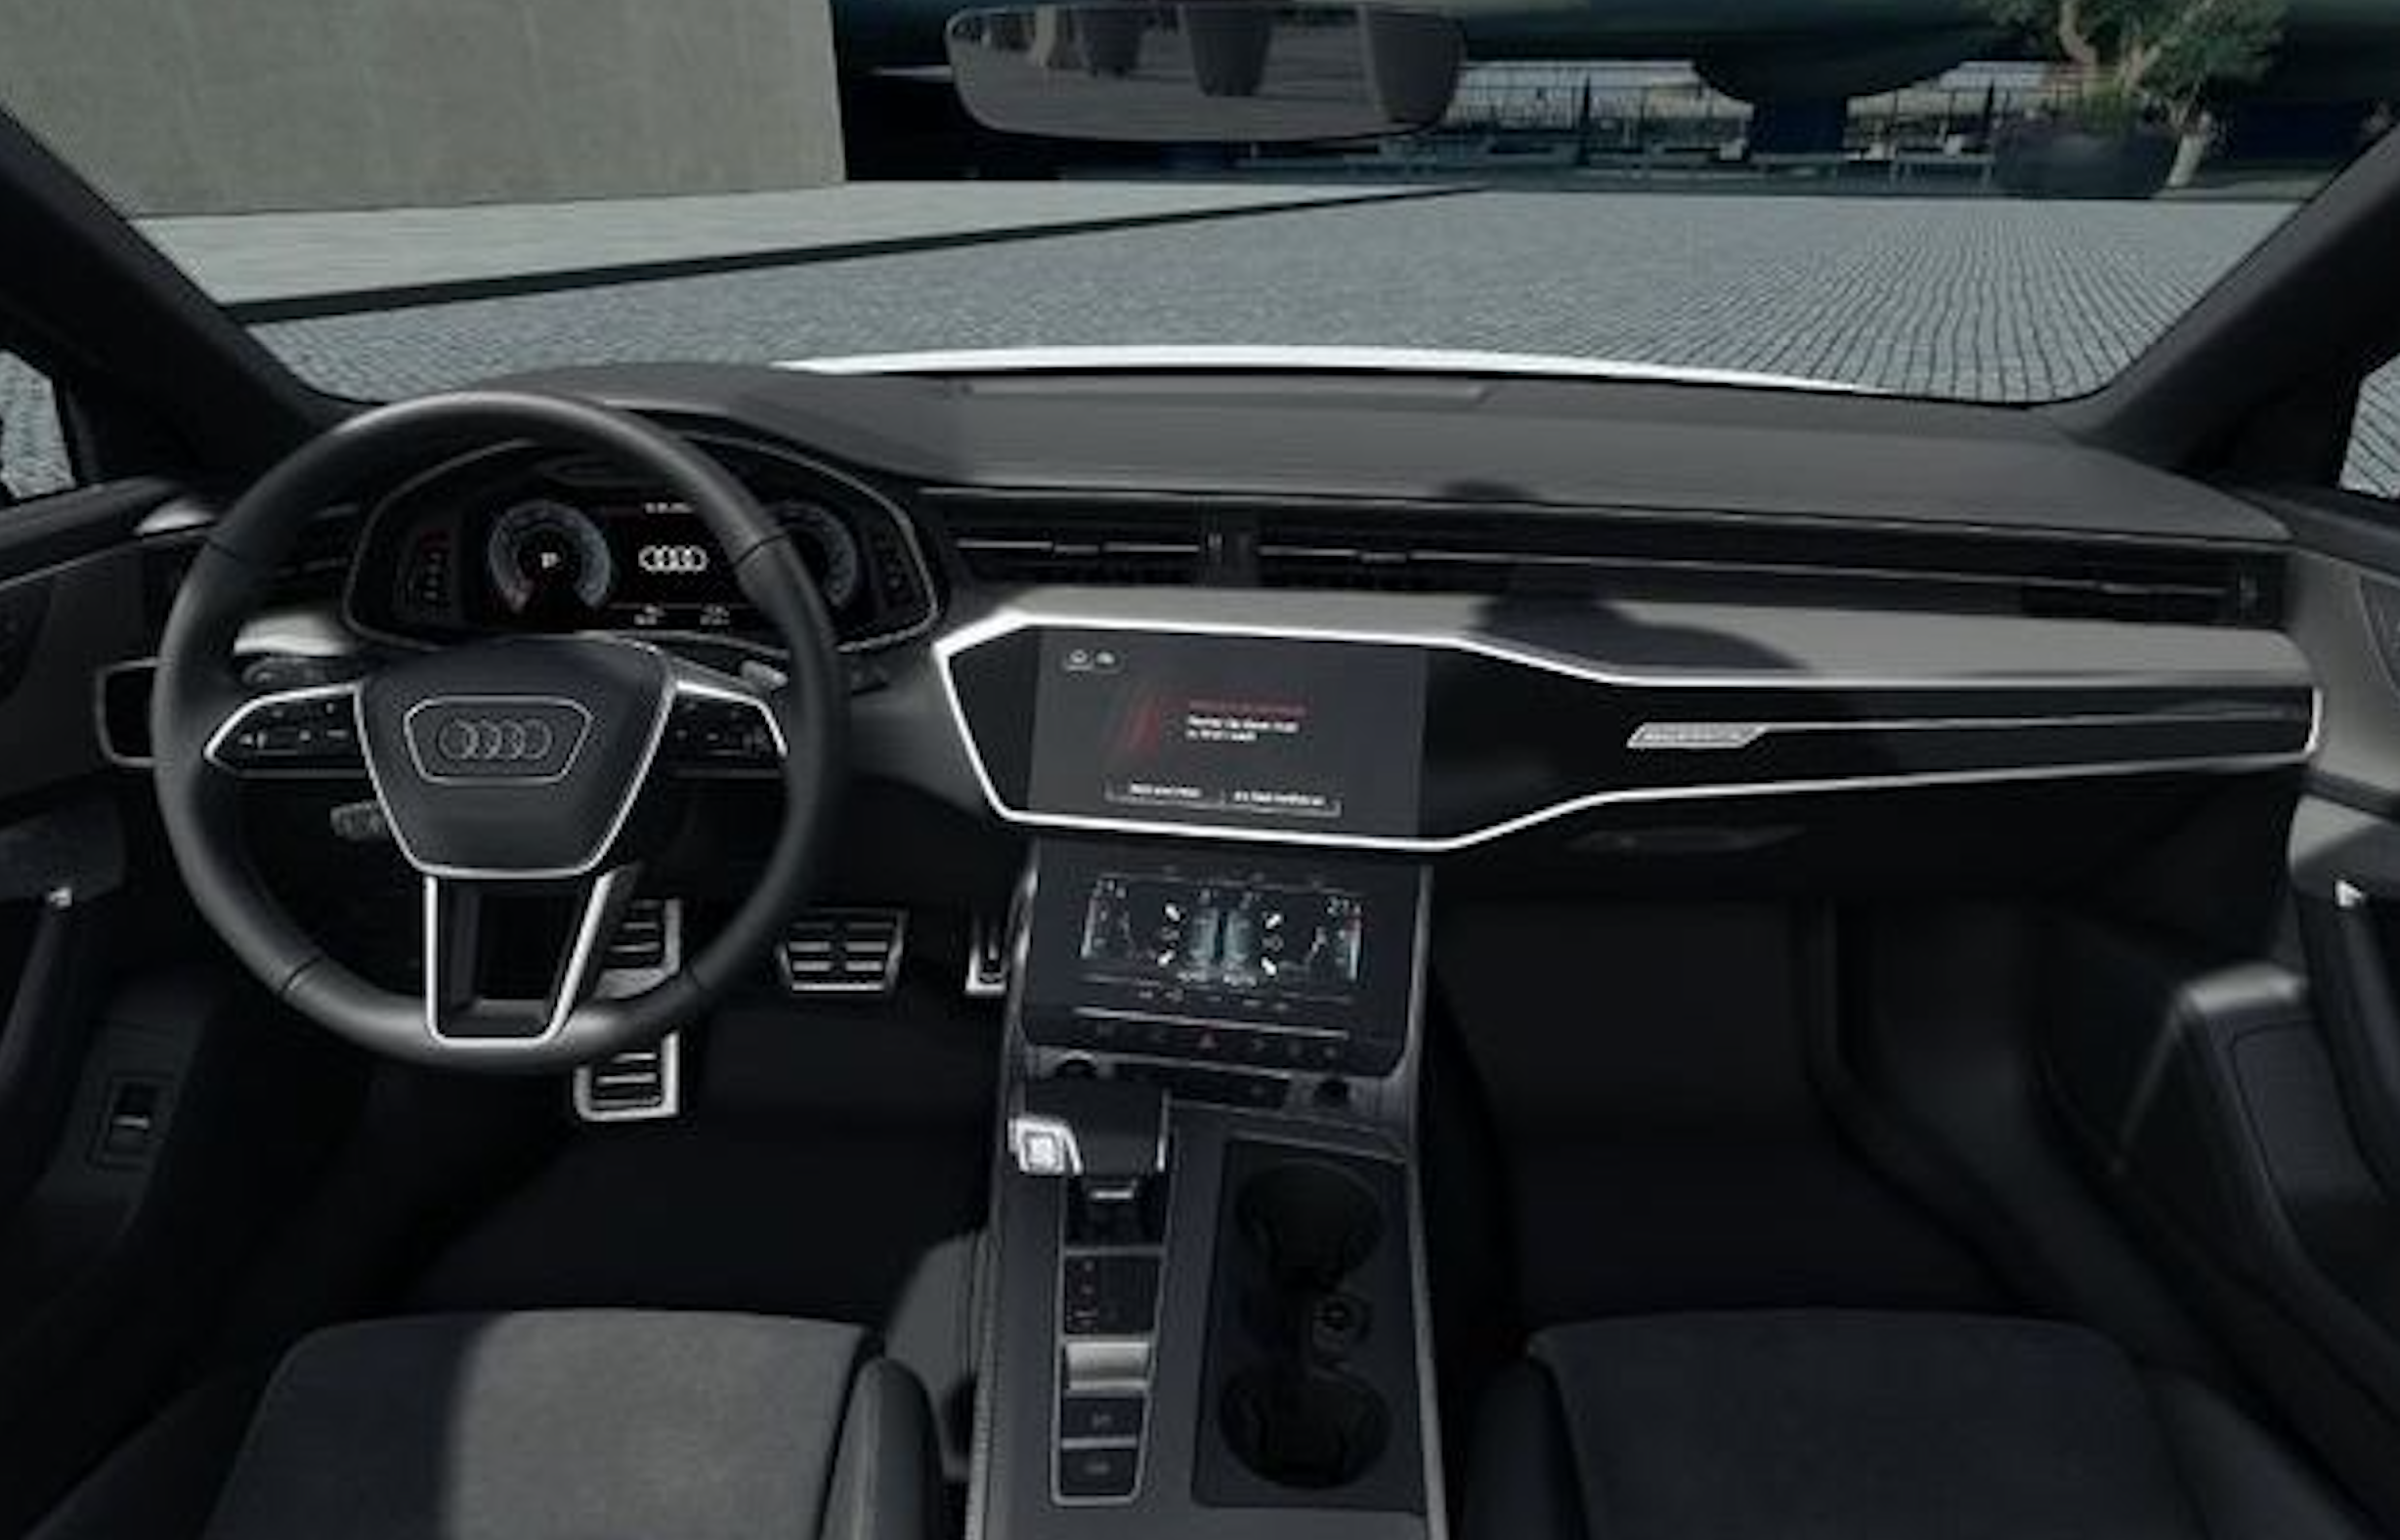 Audi A6 allroad 55 TFSI quattro Tiptronic | německé předváděcí auto na dovoz | skvělá výbava | legendární všestranný kombík s benzínovým motorem V6 | nákup online na AUTOiBUY.com